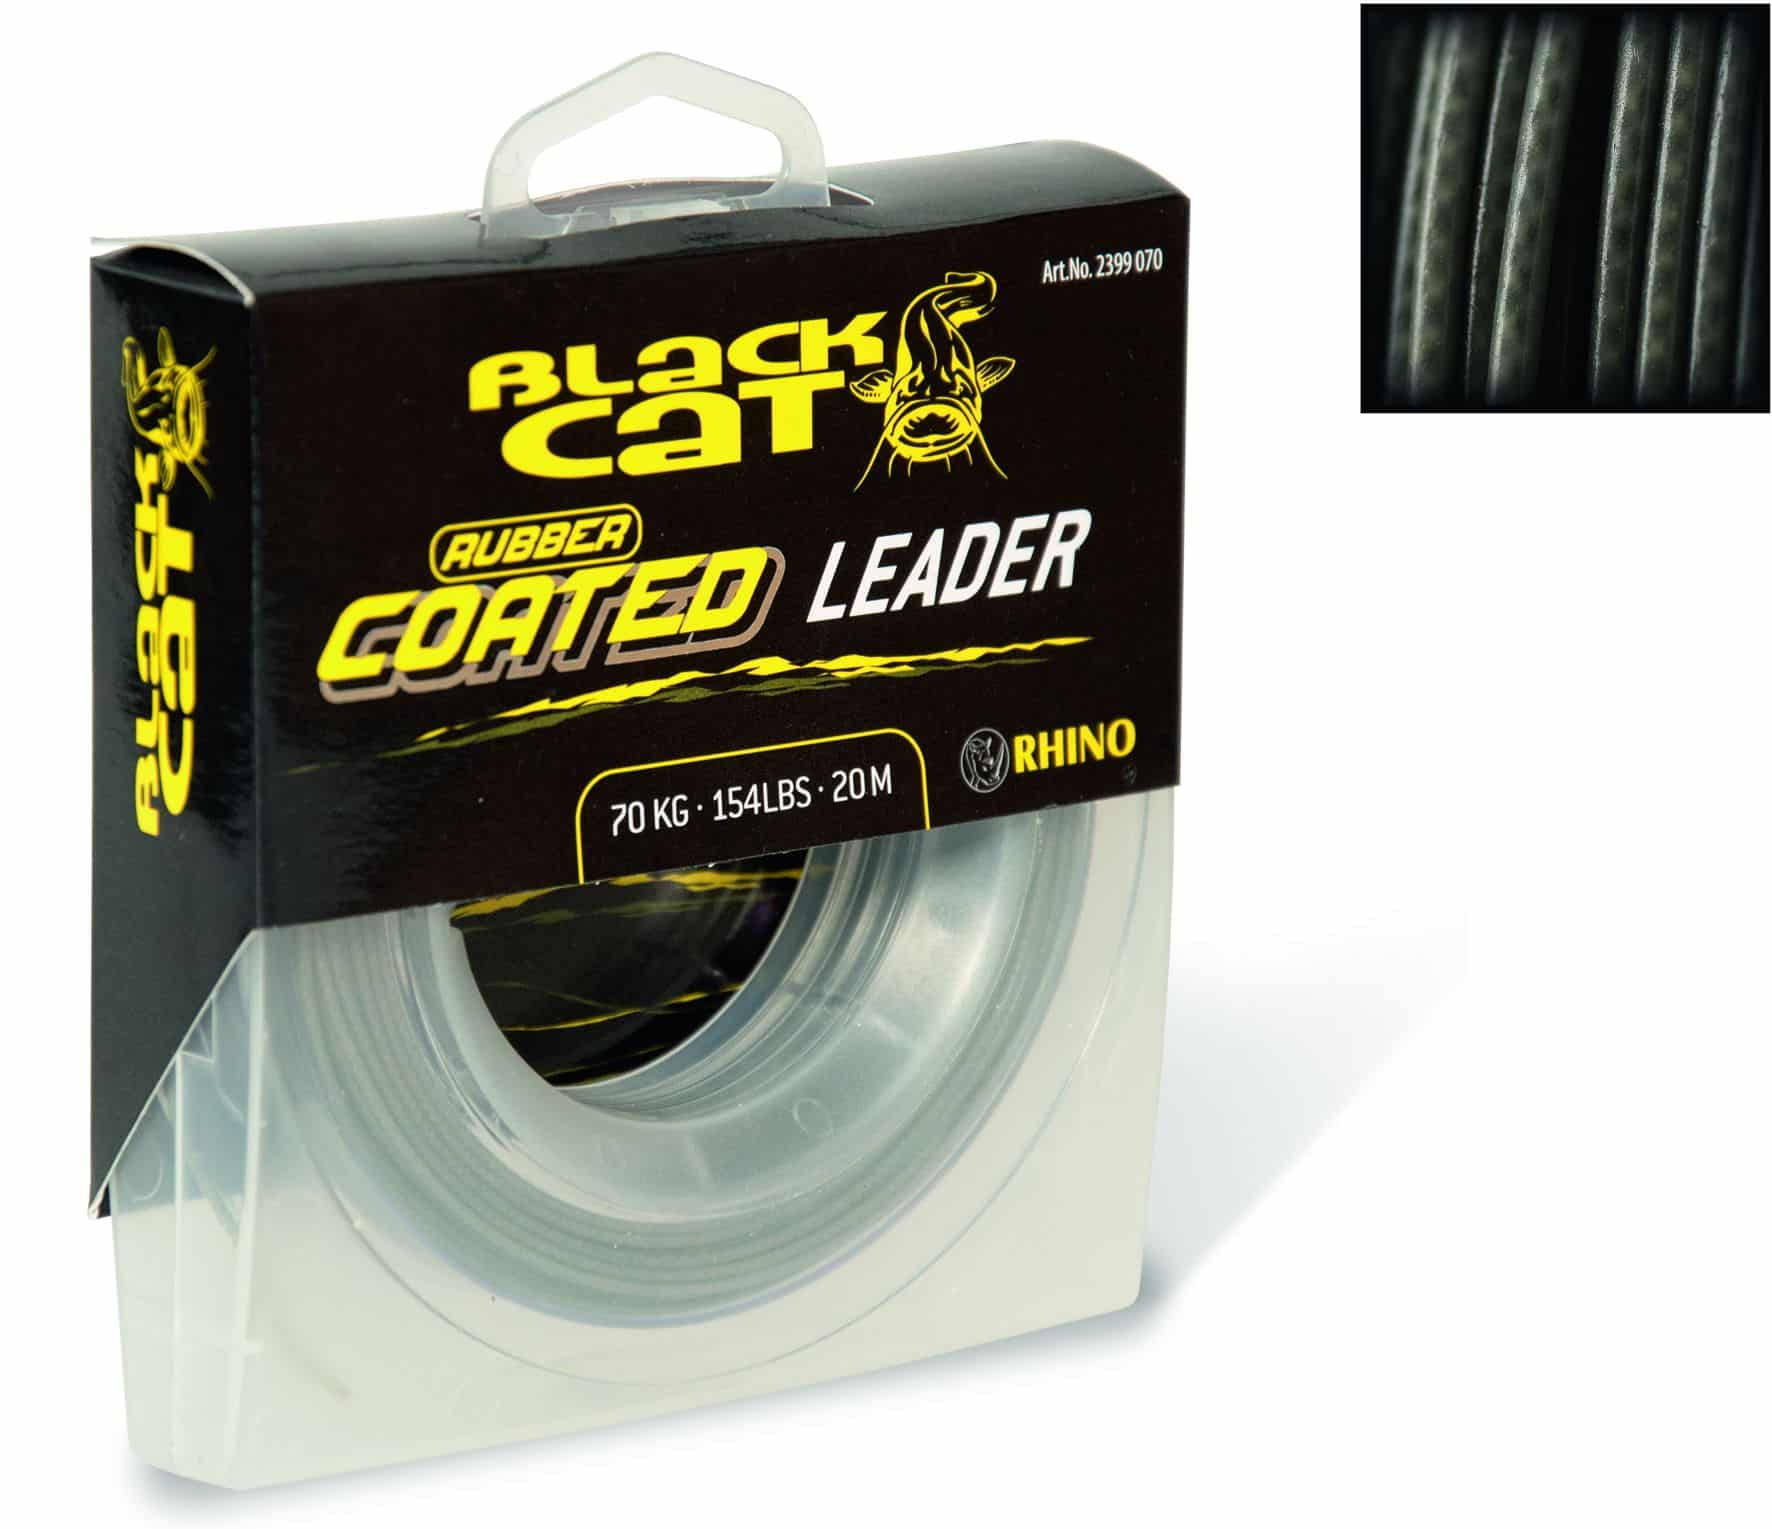 Black Cat Rubber coated Leader 0,80mm